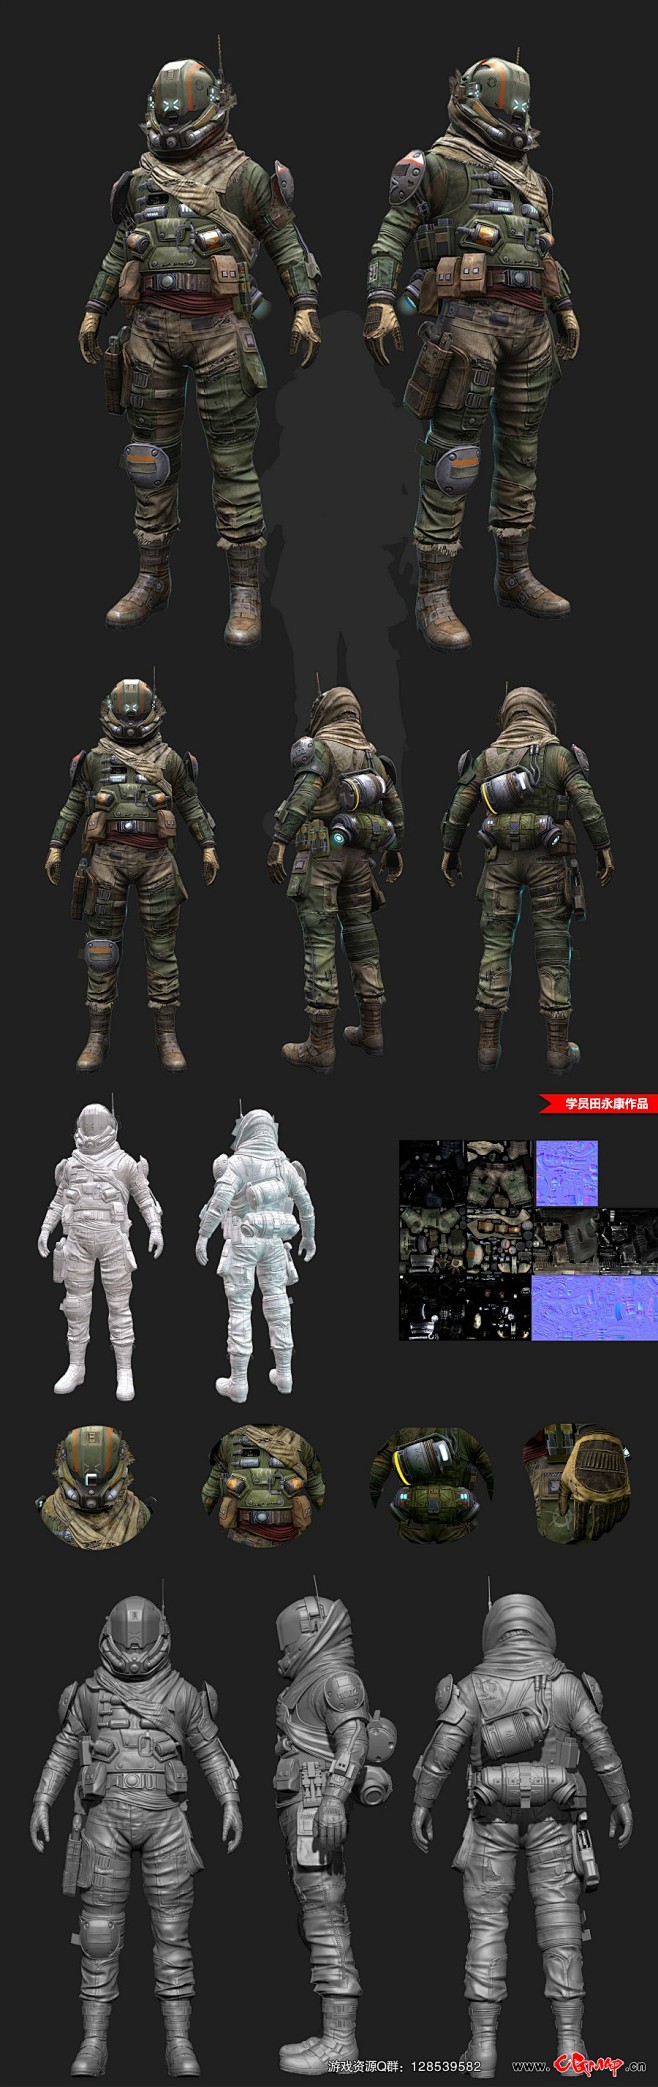 超级现代士兵CG 次时代maya模型 带...